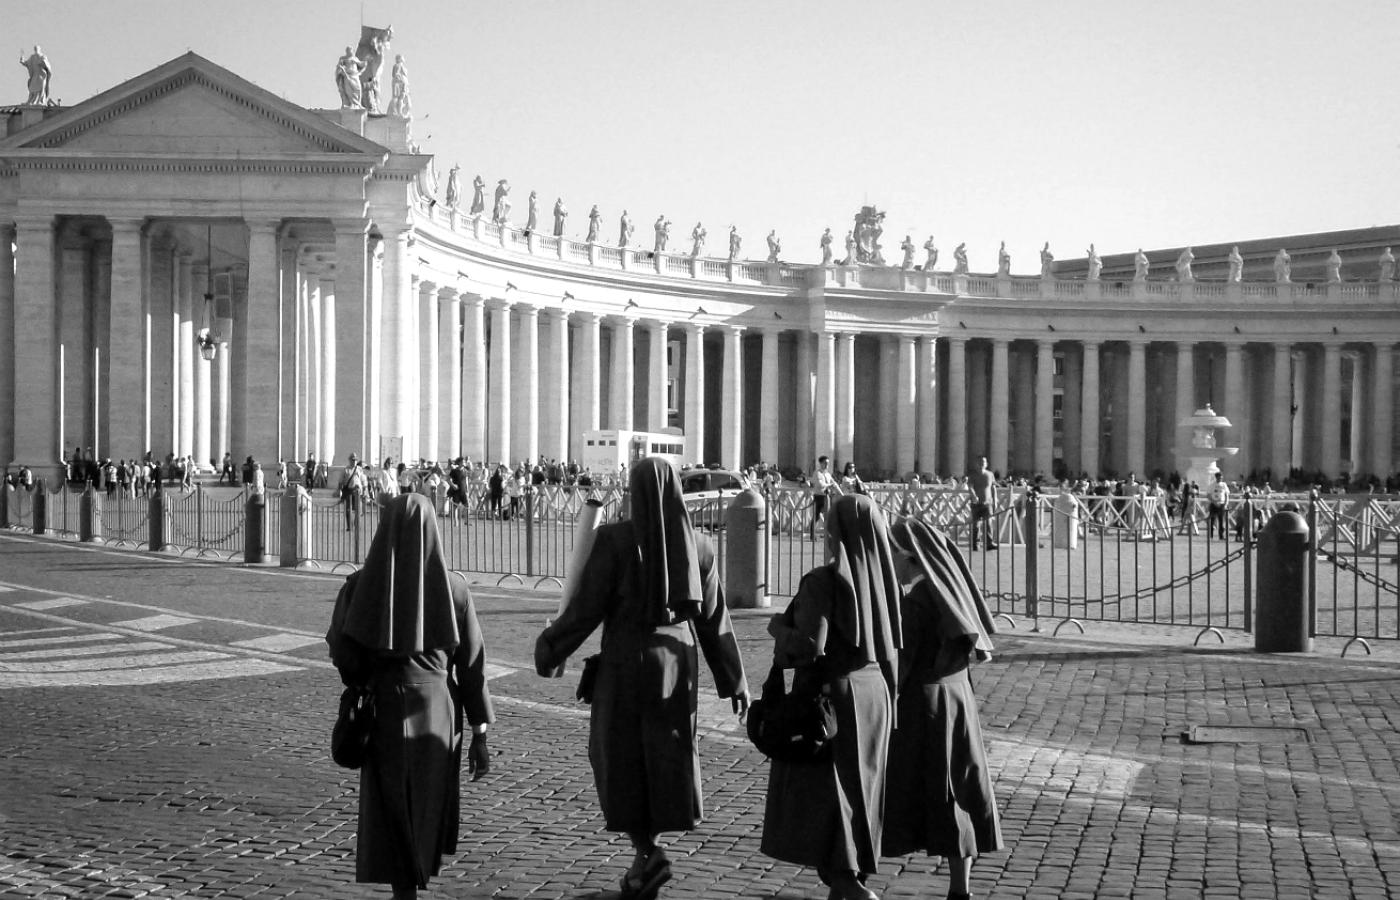 Kwestia molestowania seksualnego zakonnic przez duchownych pojawia się w przestrzeni publicznej nie pierwszy raz.